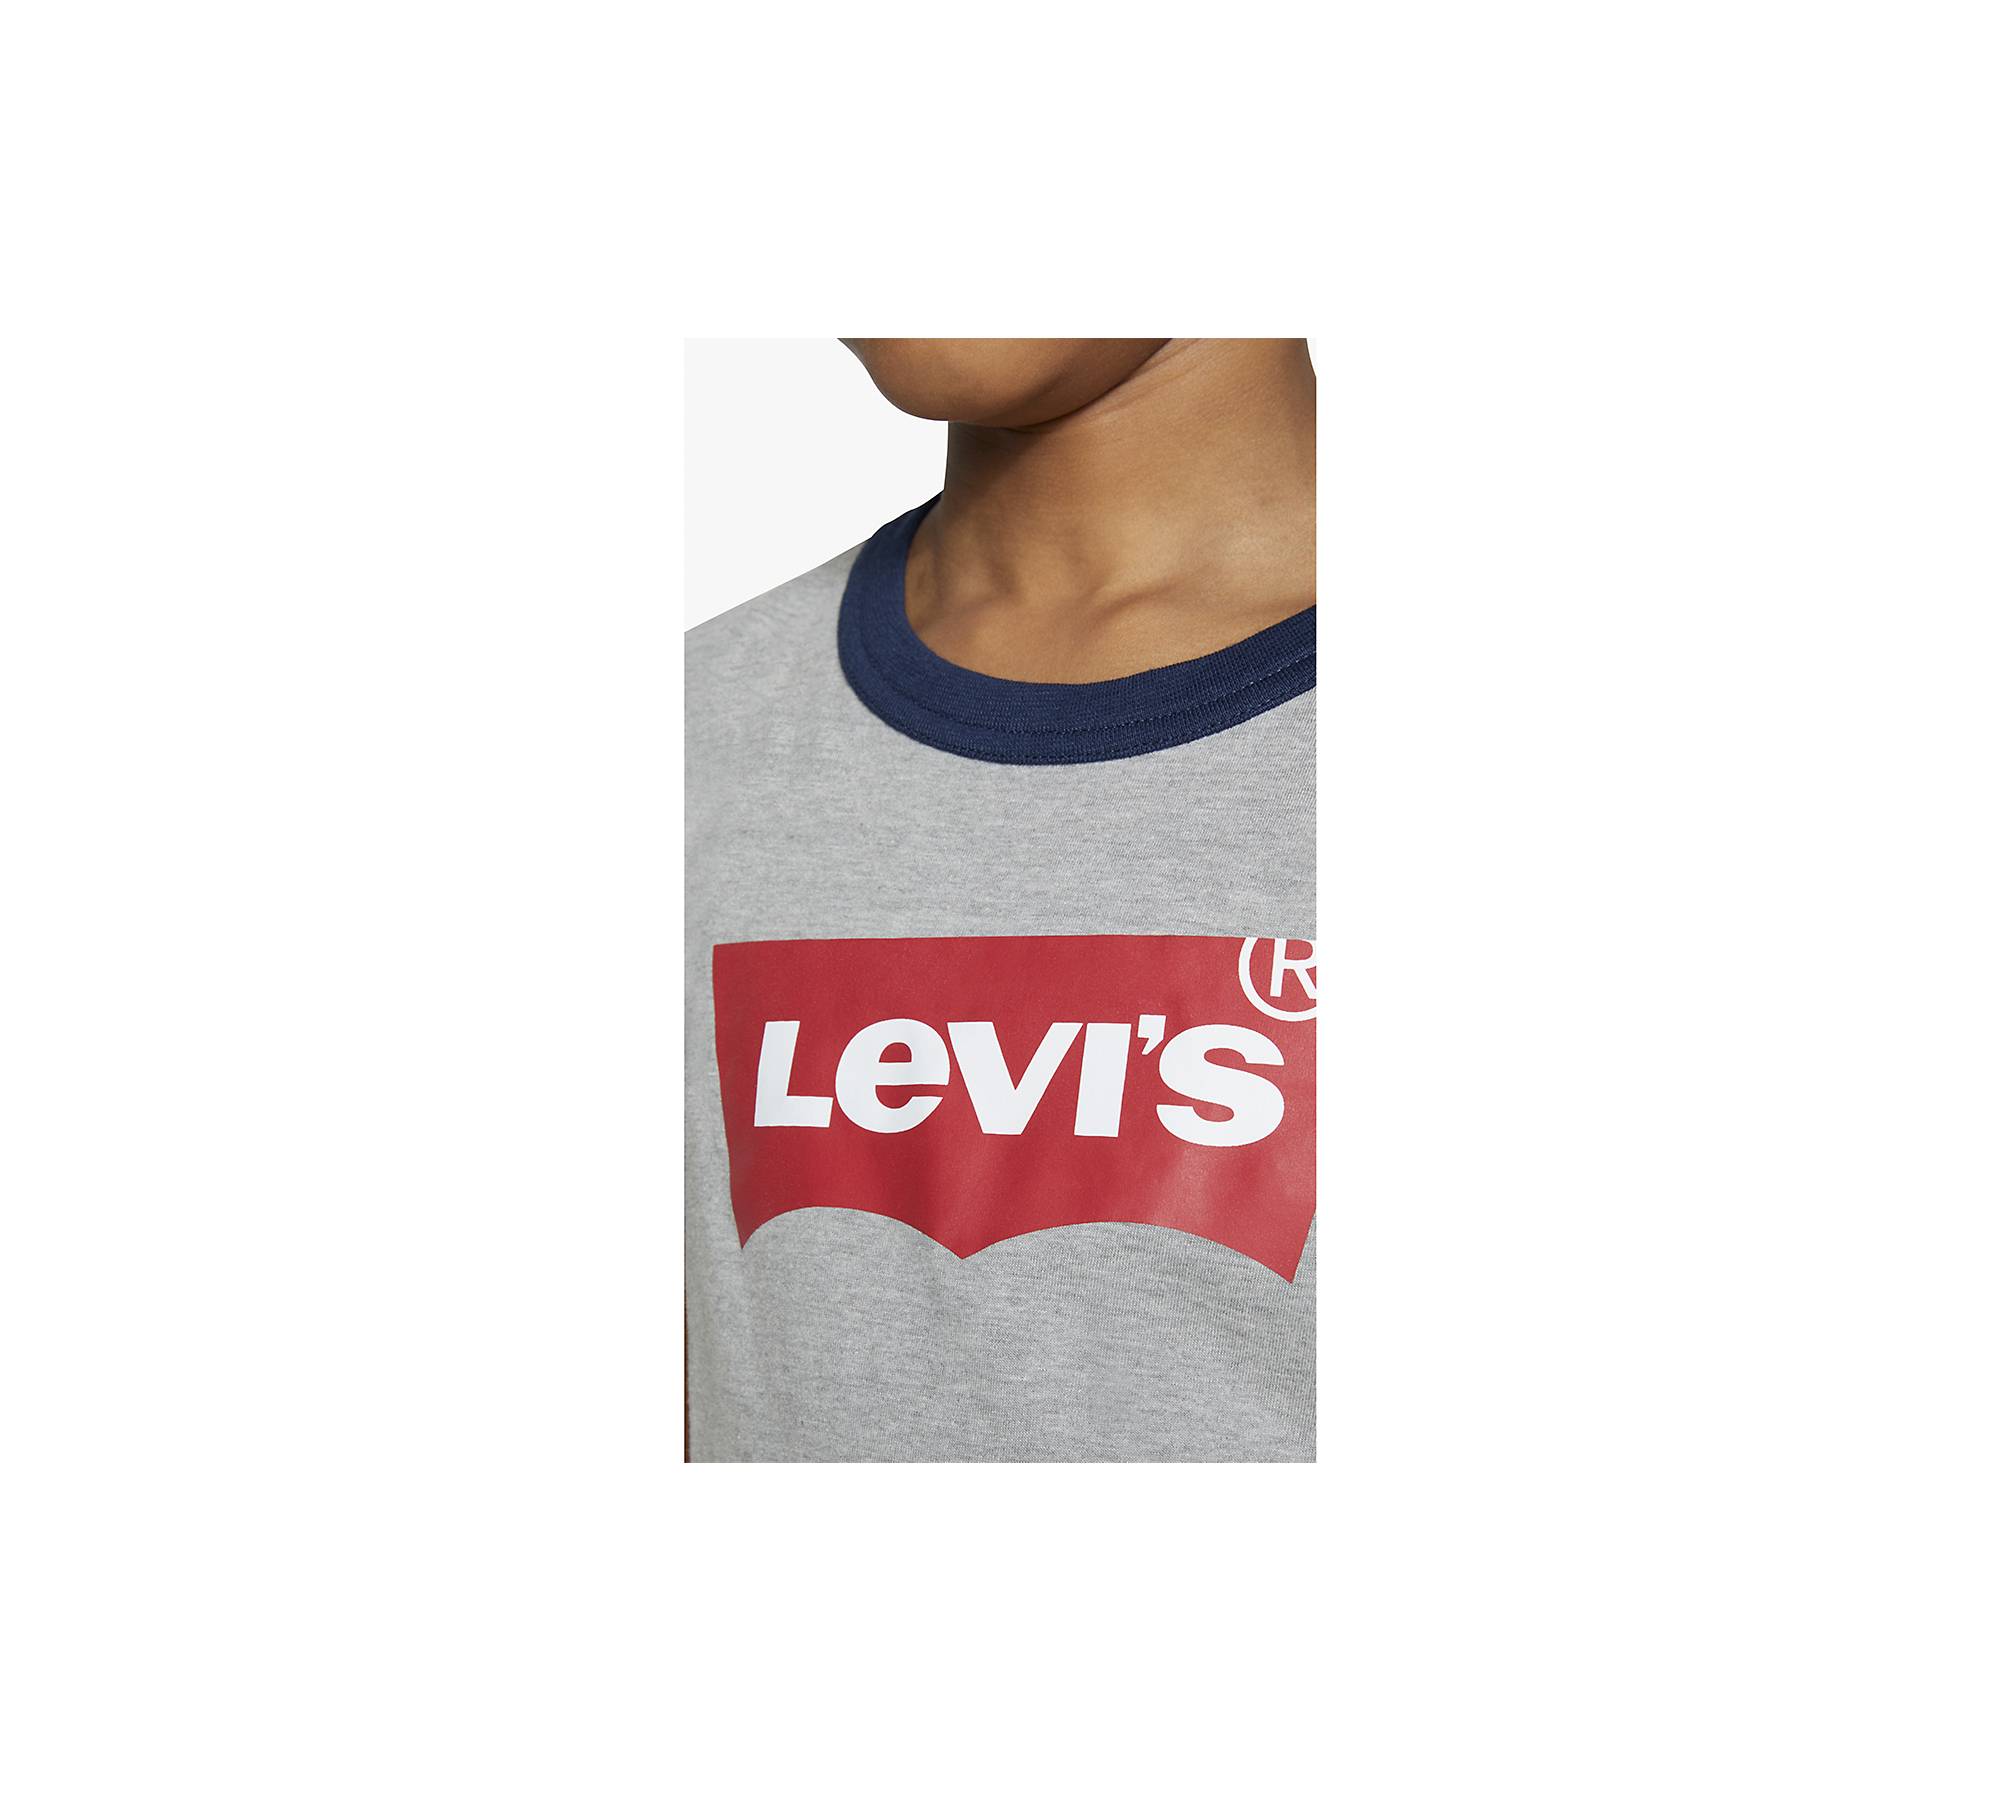 Levi's® Vintage Clothing 1970s Ringer Tee - White